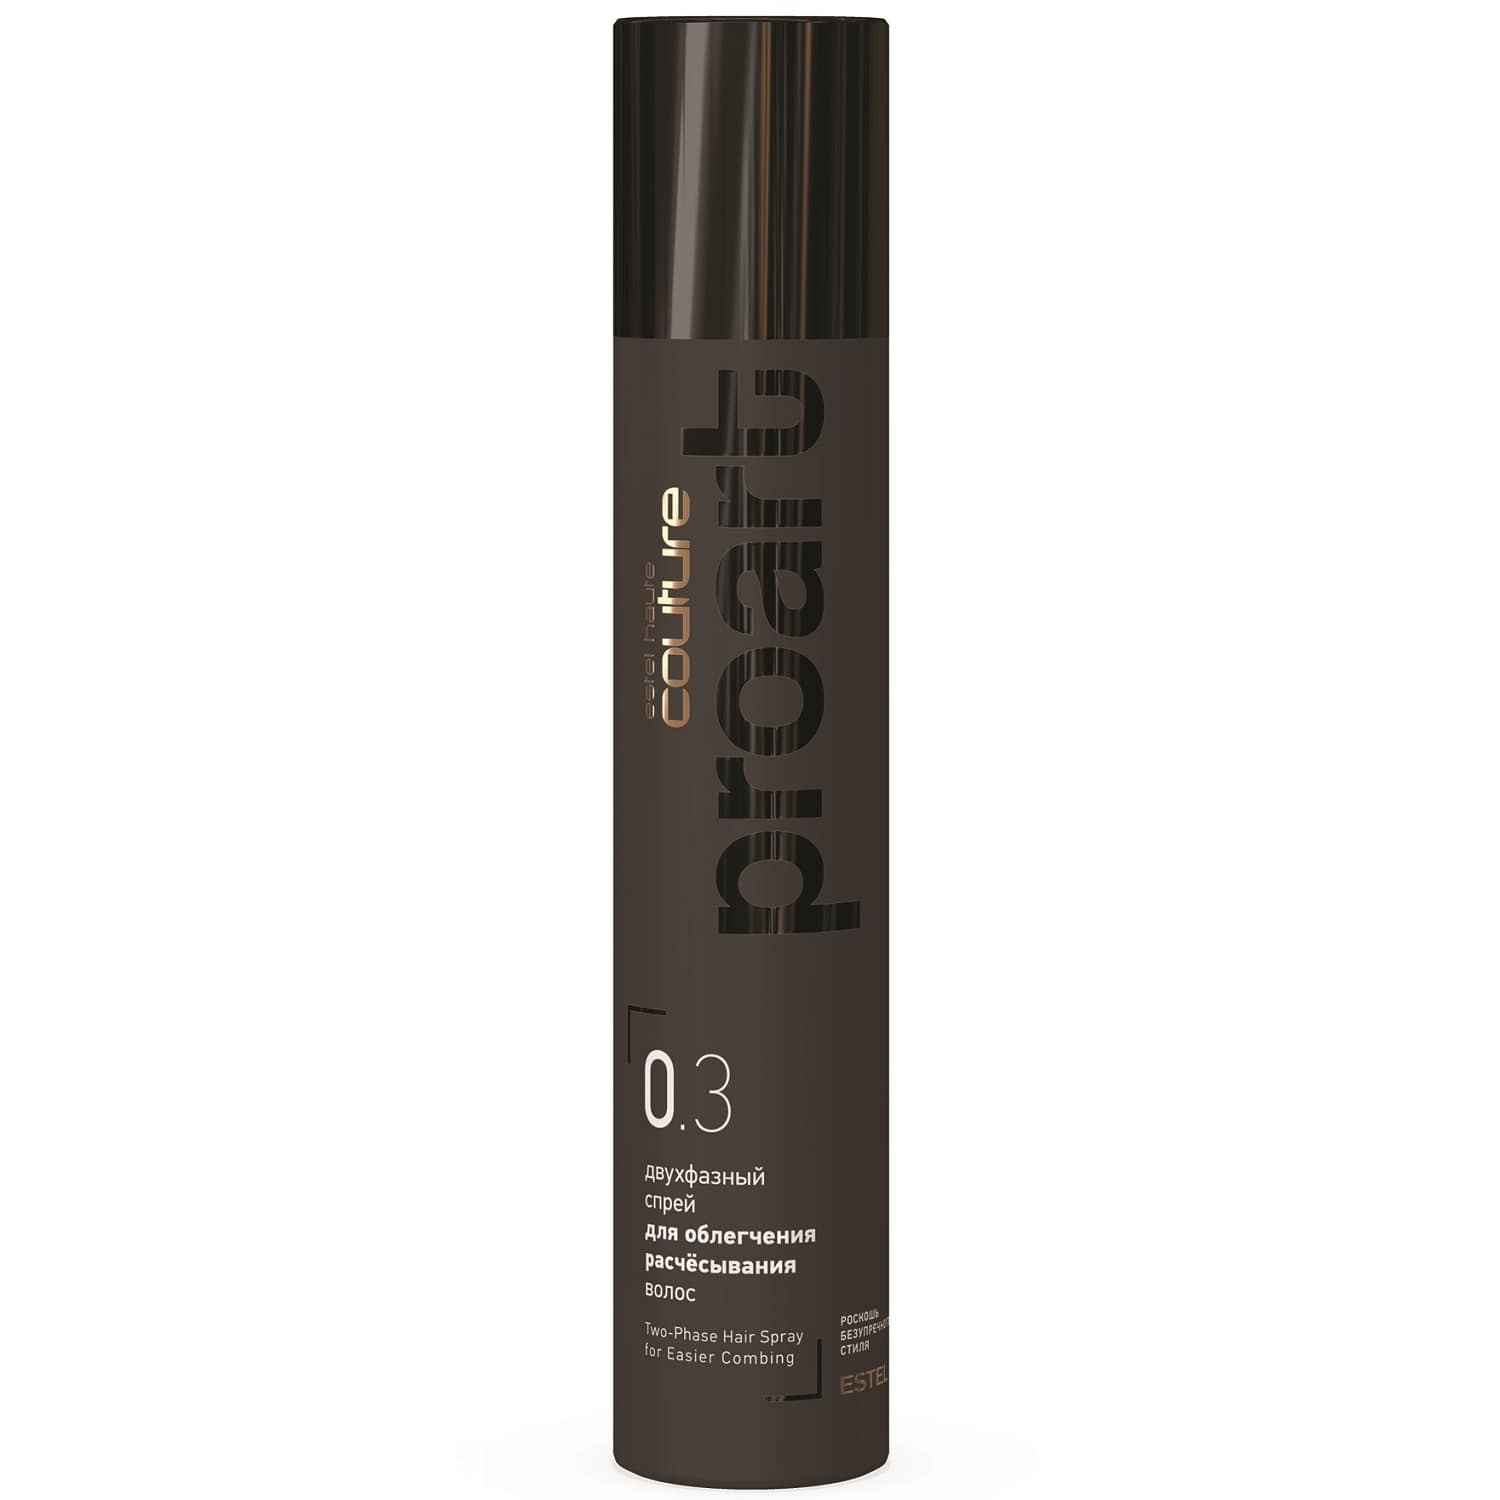 Estel Двухфазный спрей для облегчения расчёсывания волос proArt 0.3, 300 мл (Estel, Haute Couture) цена и фото